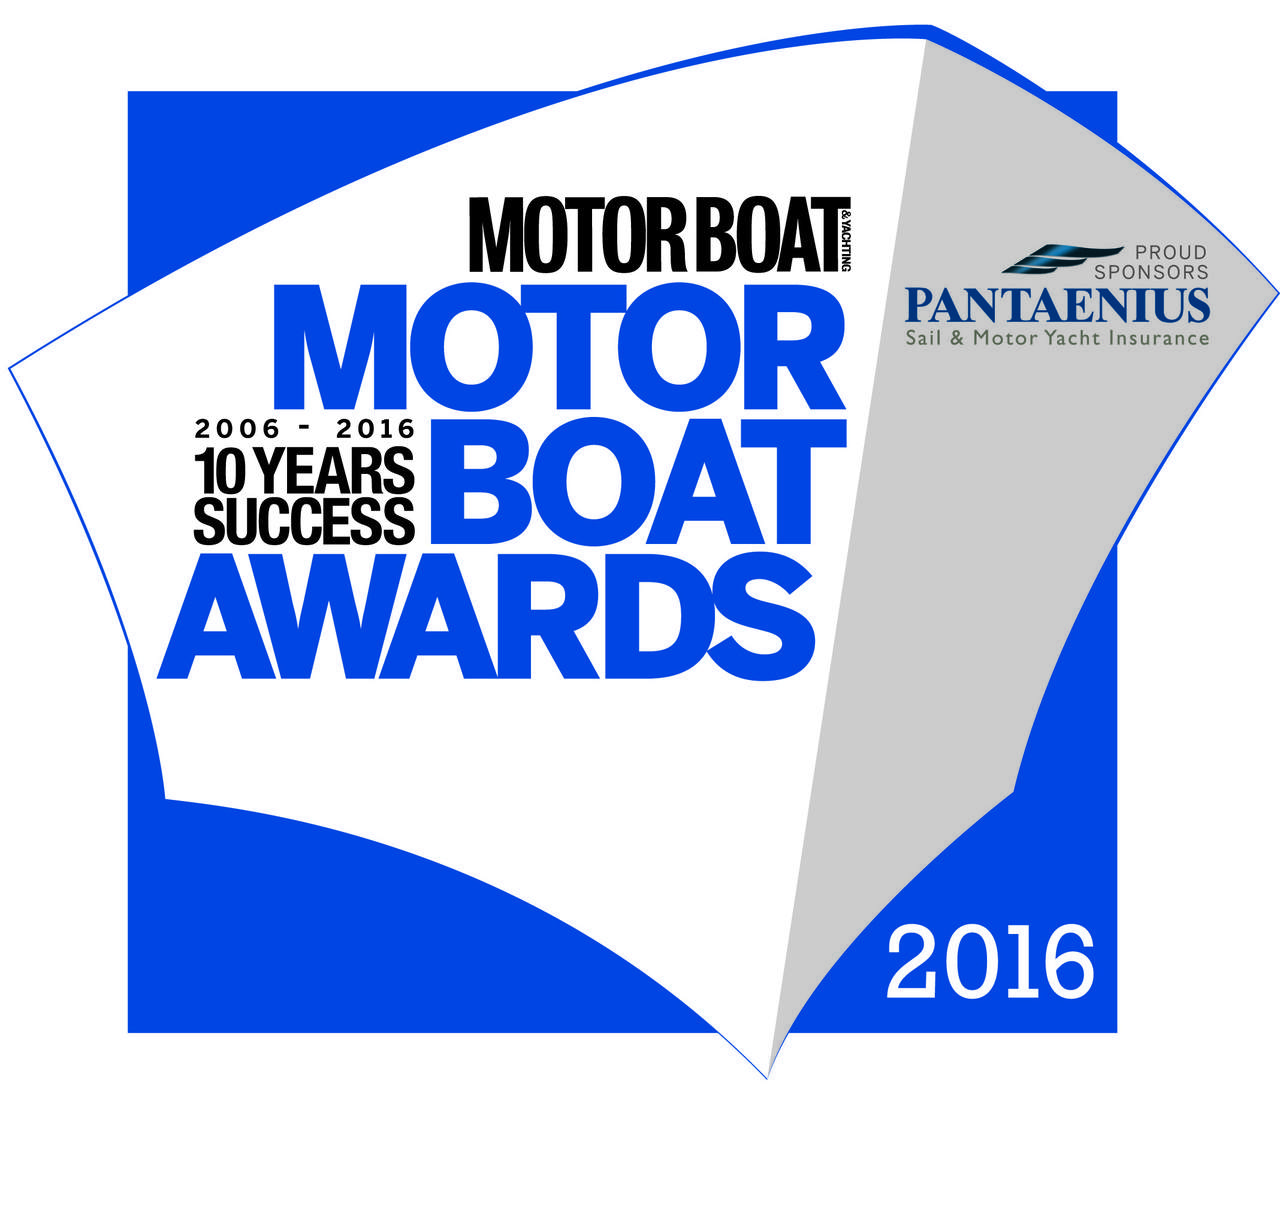 El PRESTIGE 680 ha sido nominado para el “Motor Boat 2016” de “The Year Awards” 9